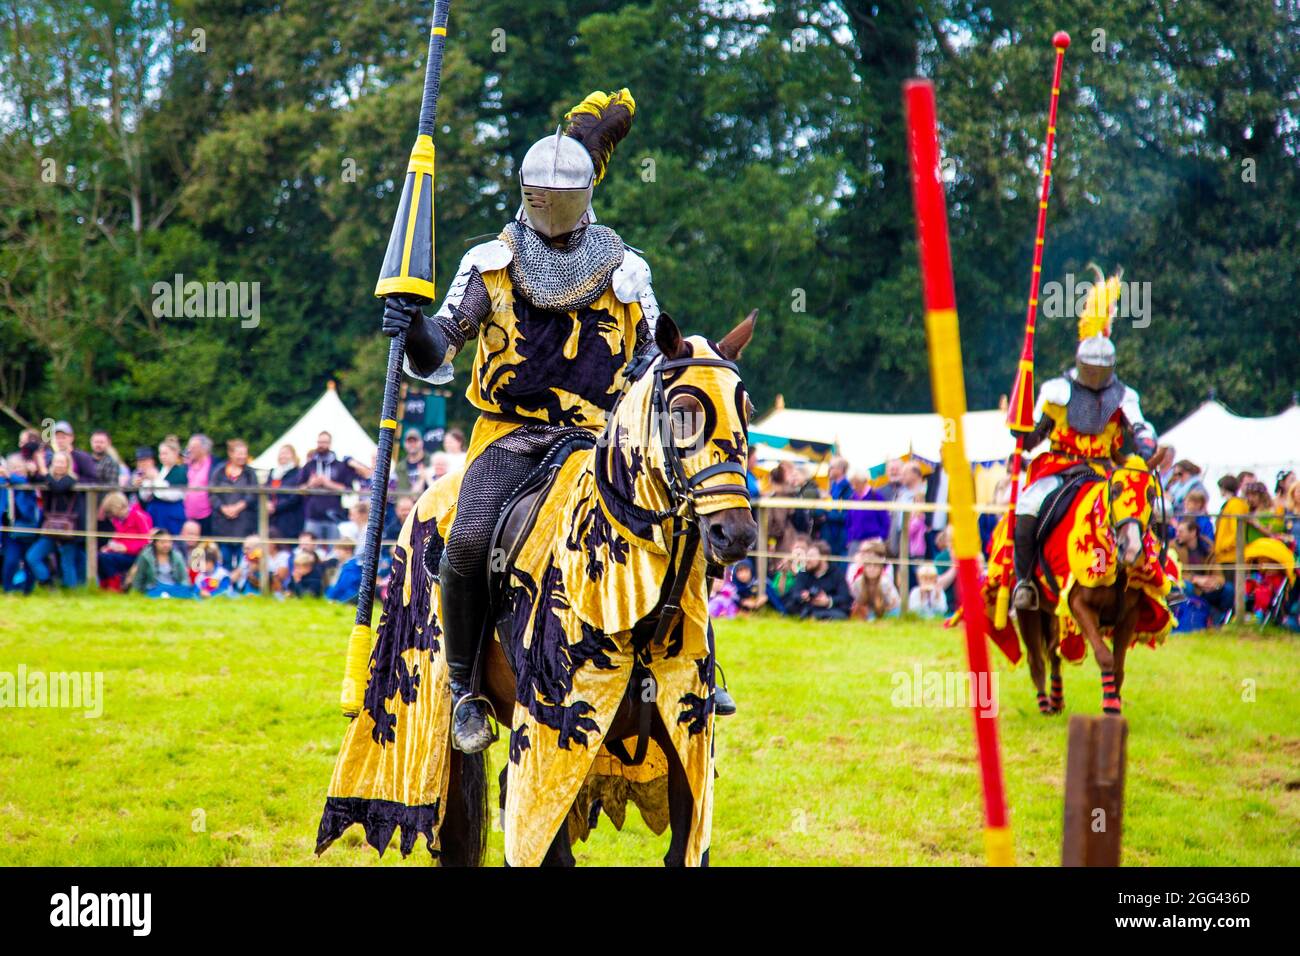 8. August 2021 - Ritter in Rüstung auf dem Pferderücken mit Lanzen während des Wettkampfes beim Medieval Festival Loxwood Joust, West Sussex, England, U Stockfoto